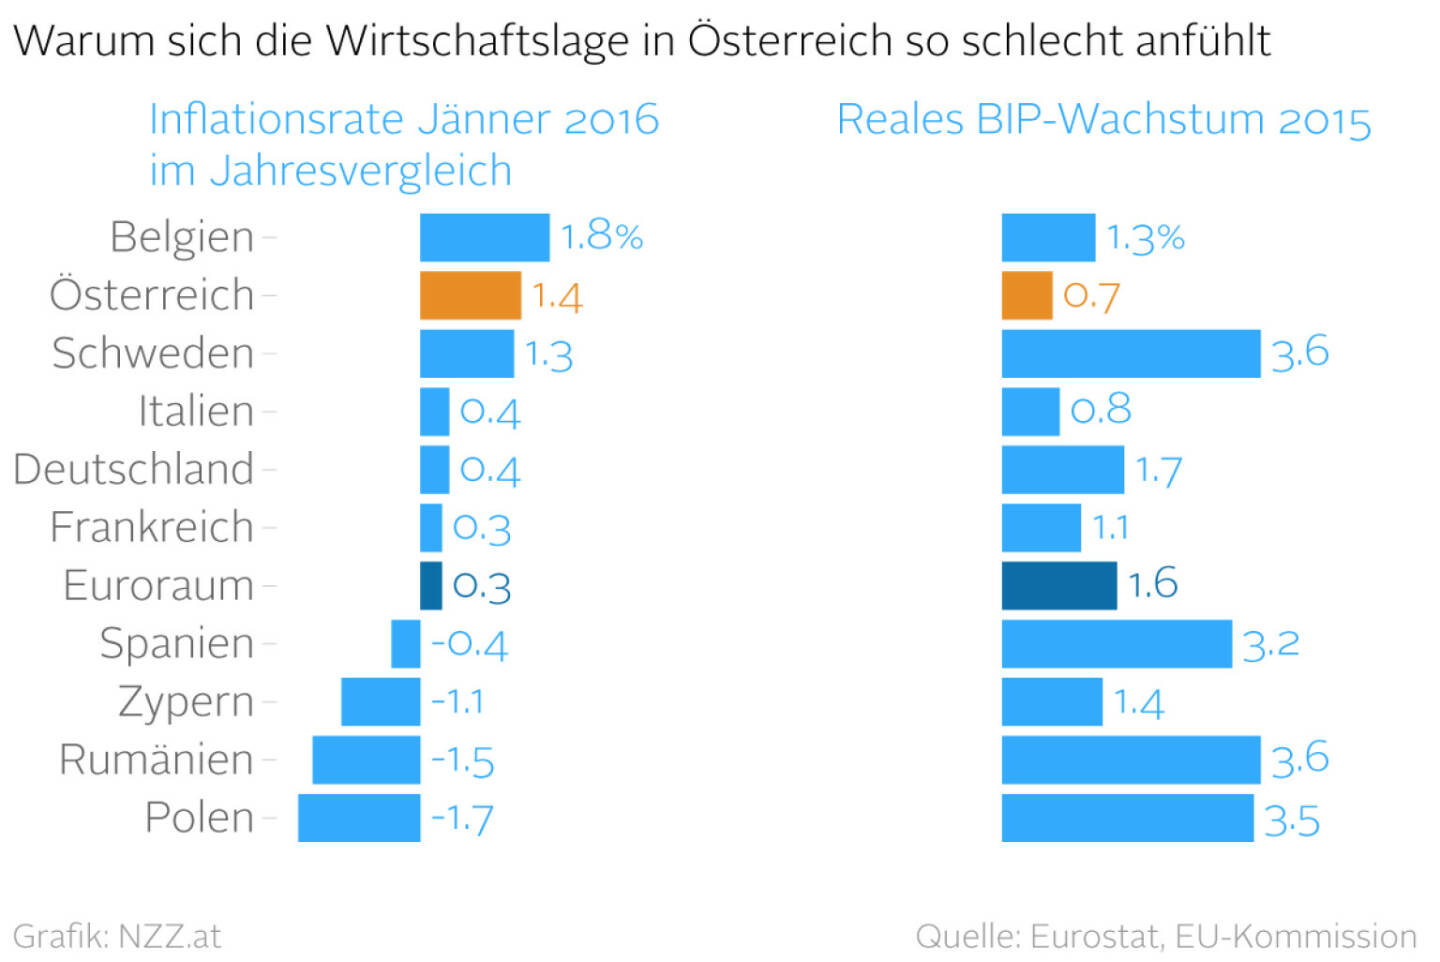 Warum sich die Wirtschaftslage in Österreich so schlecht anfühlt (Grafik von http://www.nzz.at)